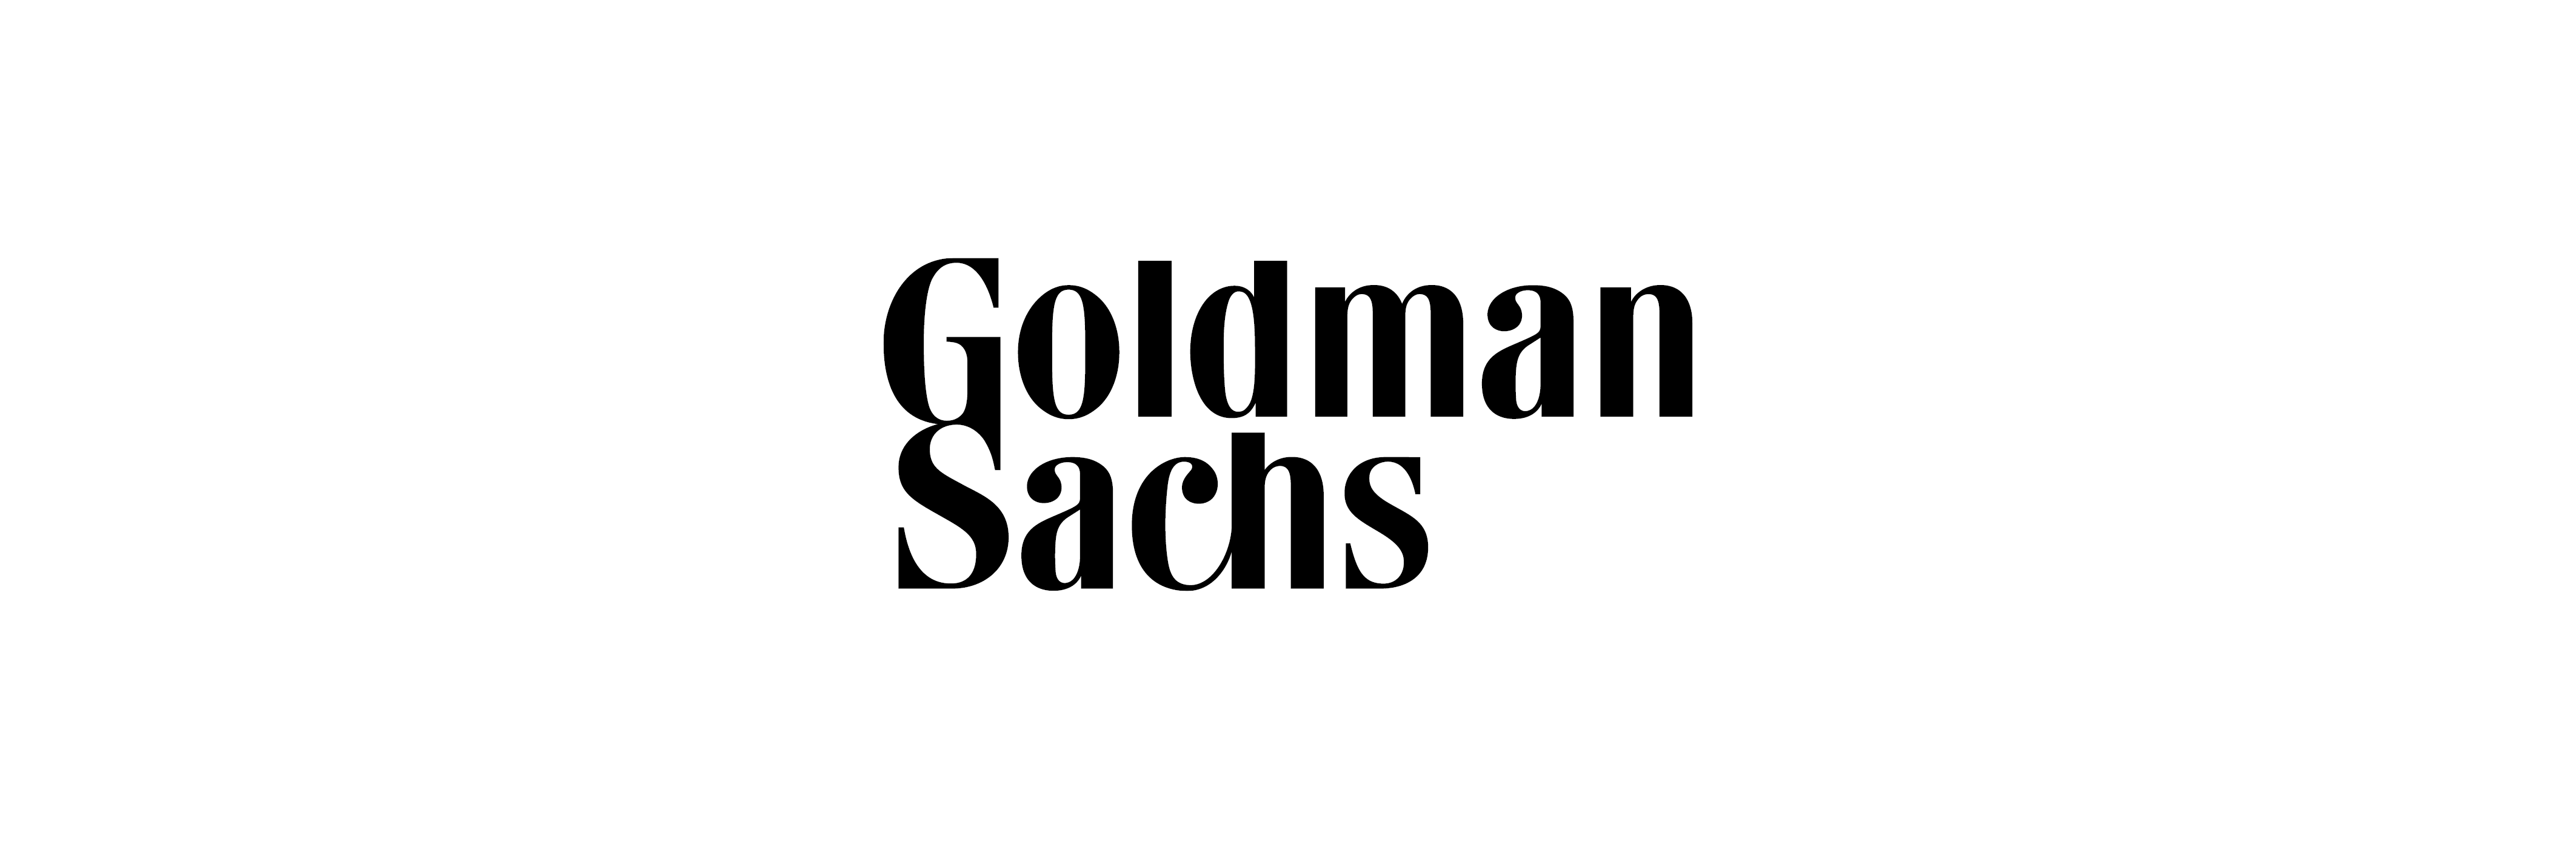 goldman-sachs-australia-australia-s-lgbtq-inclusive-employers